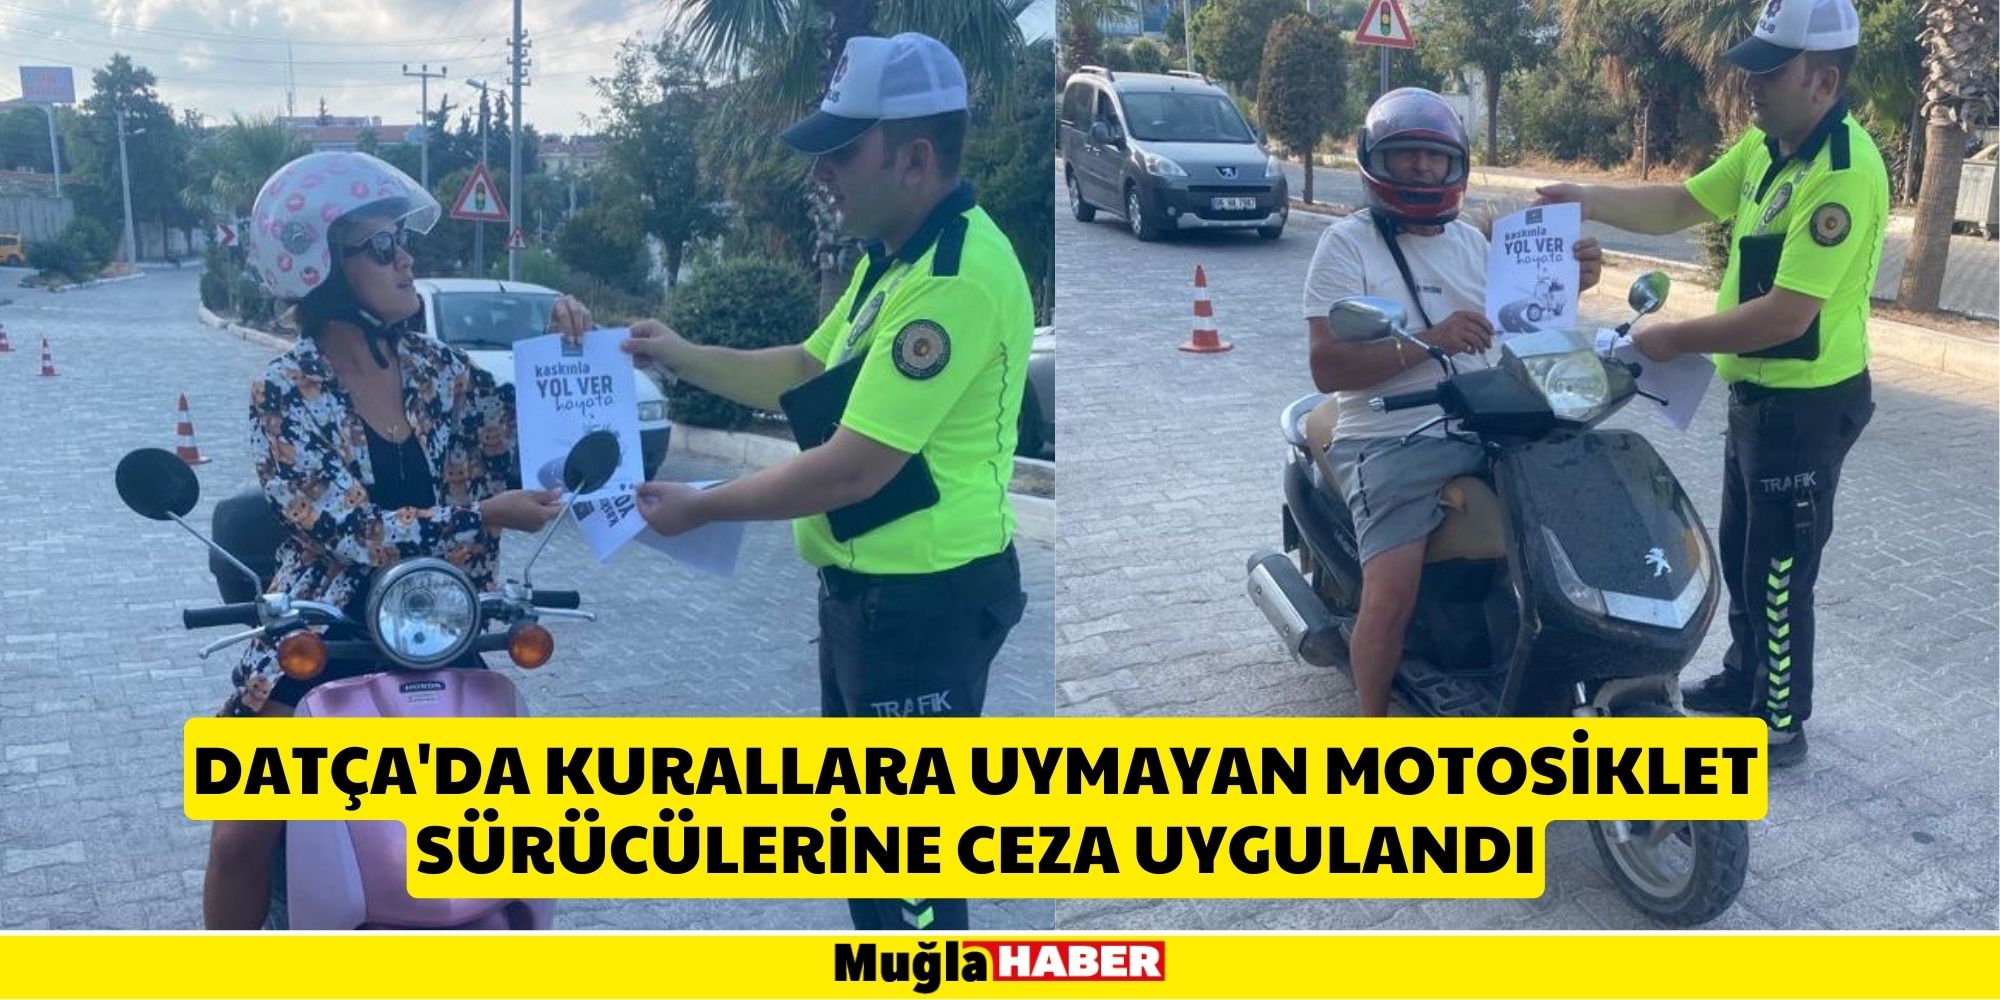 Datça'da kurallara uymayan motosiklet sürücülerine ceza uygulandı